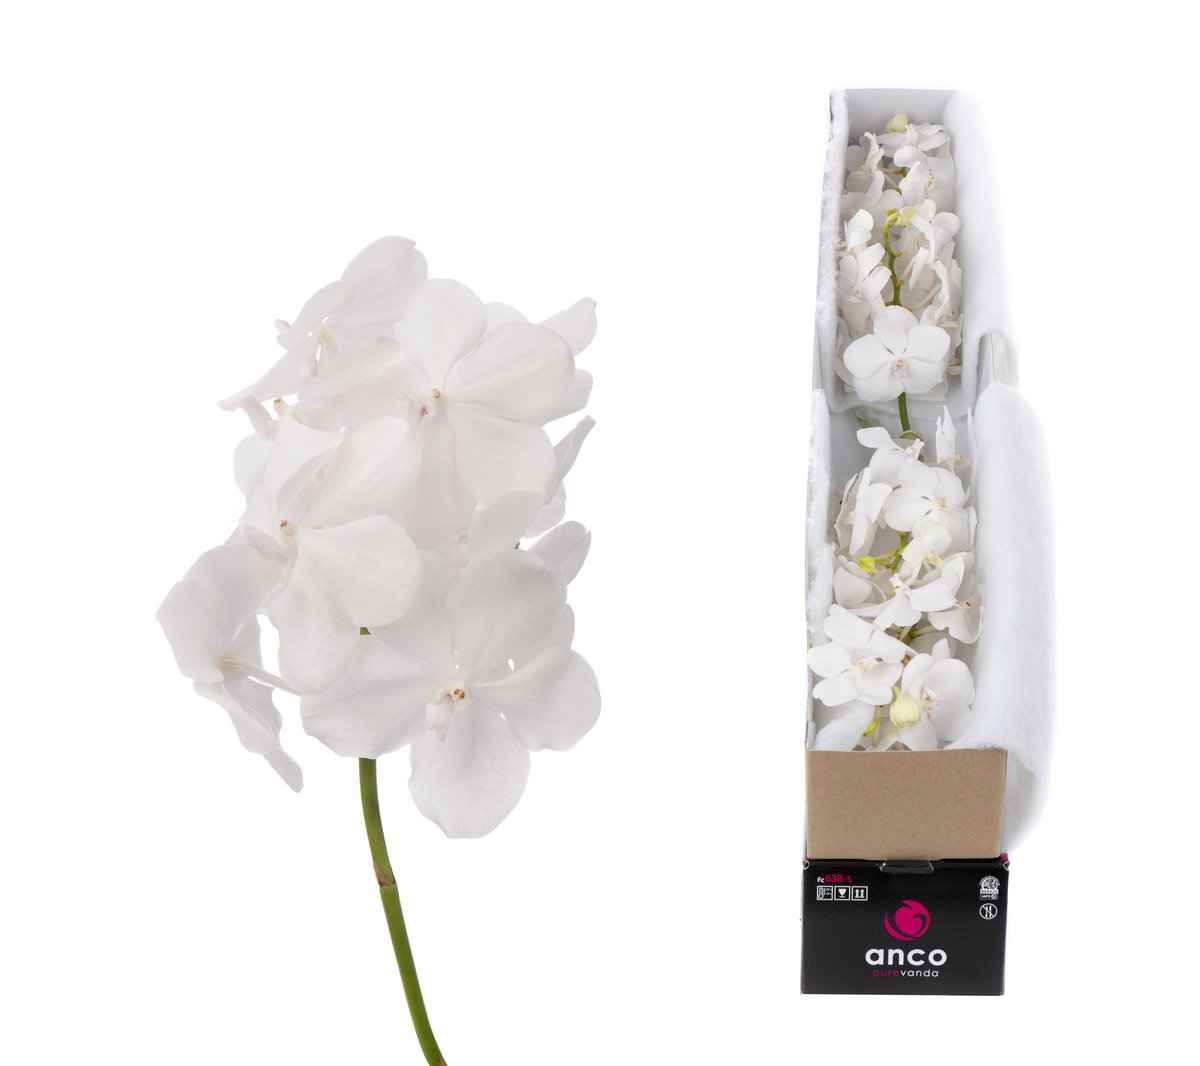 Срезанные цветы оптом Vanda tayanee diamond white per stem от 4шт из Голландии с доставкой по России